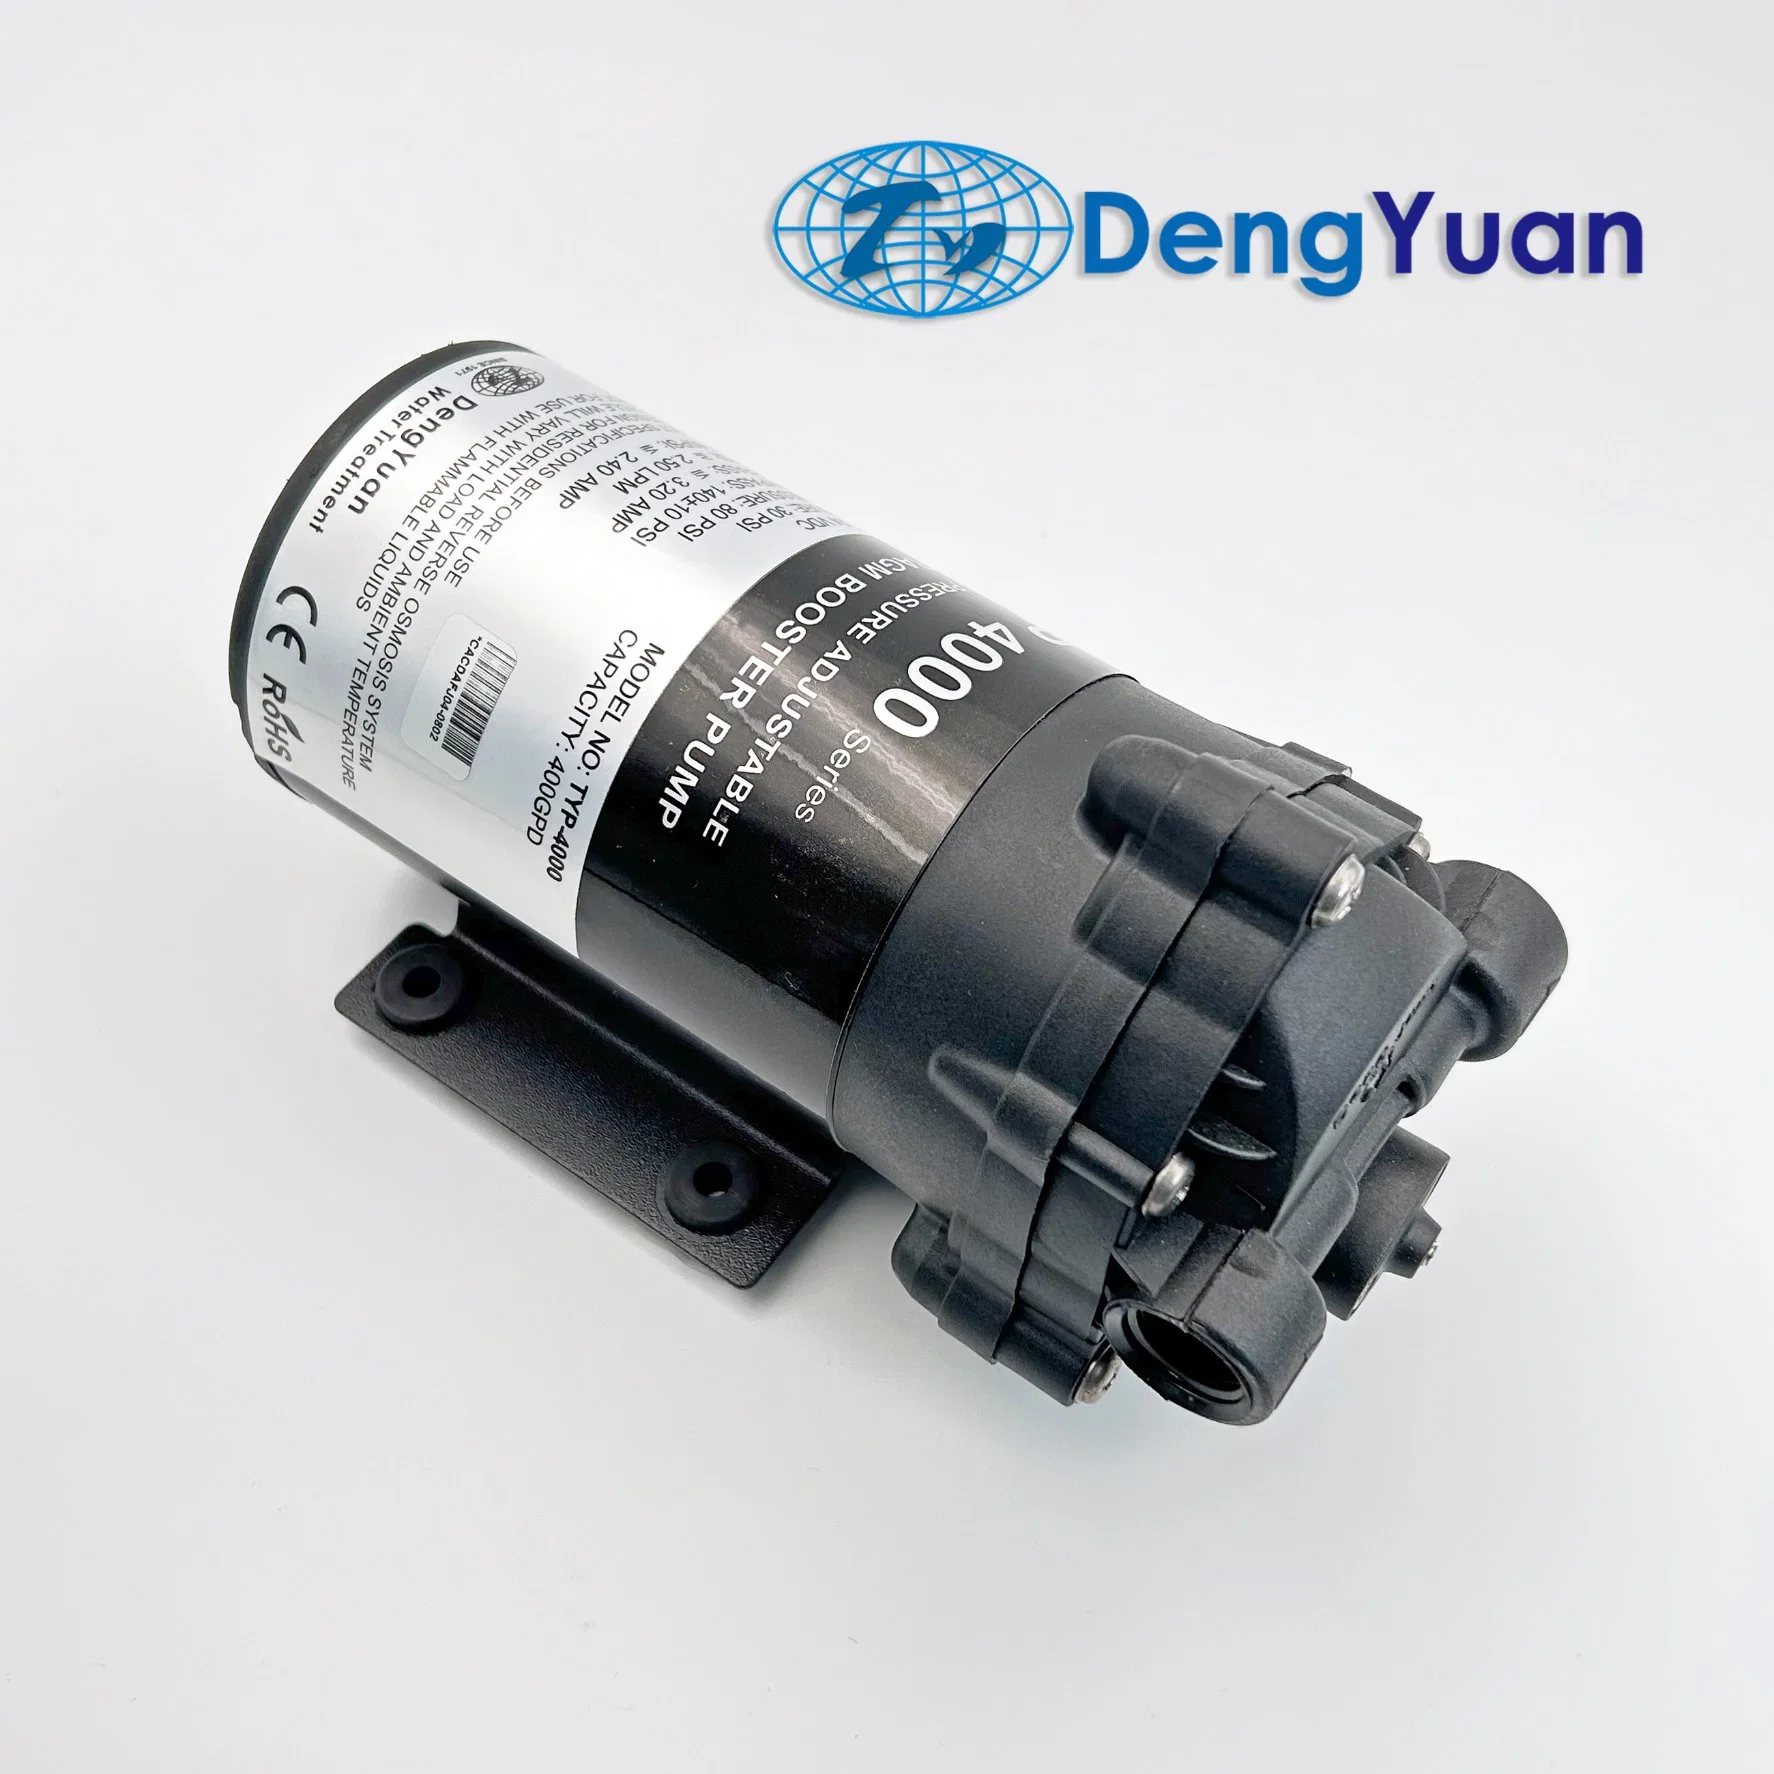 400gpd, bomba de expansão de água Deng Yuan, para bomba de água de Osmose inversa/Máquina de Pulverização de alta pressão, fábrica do fabricante